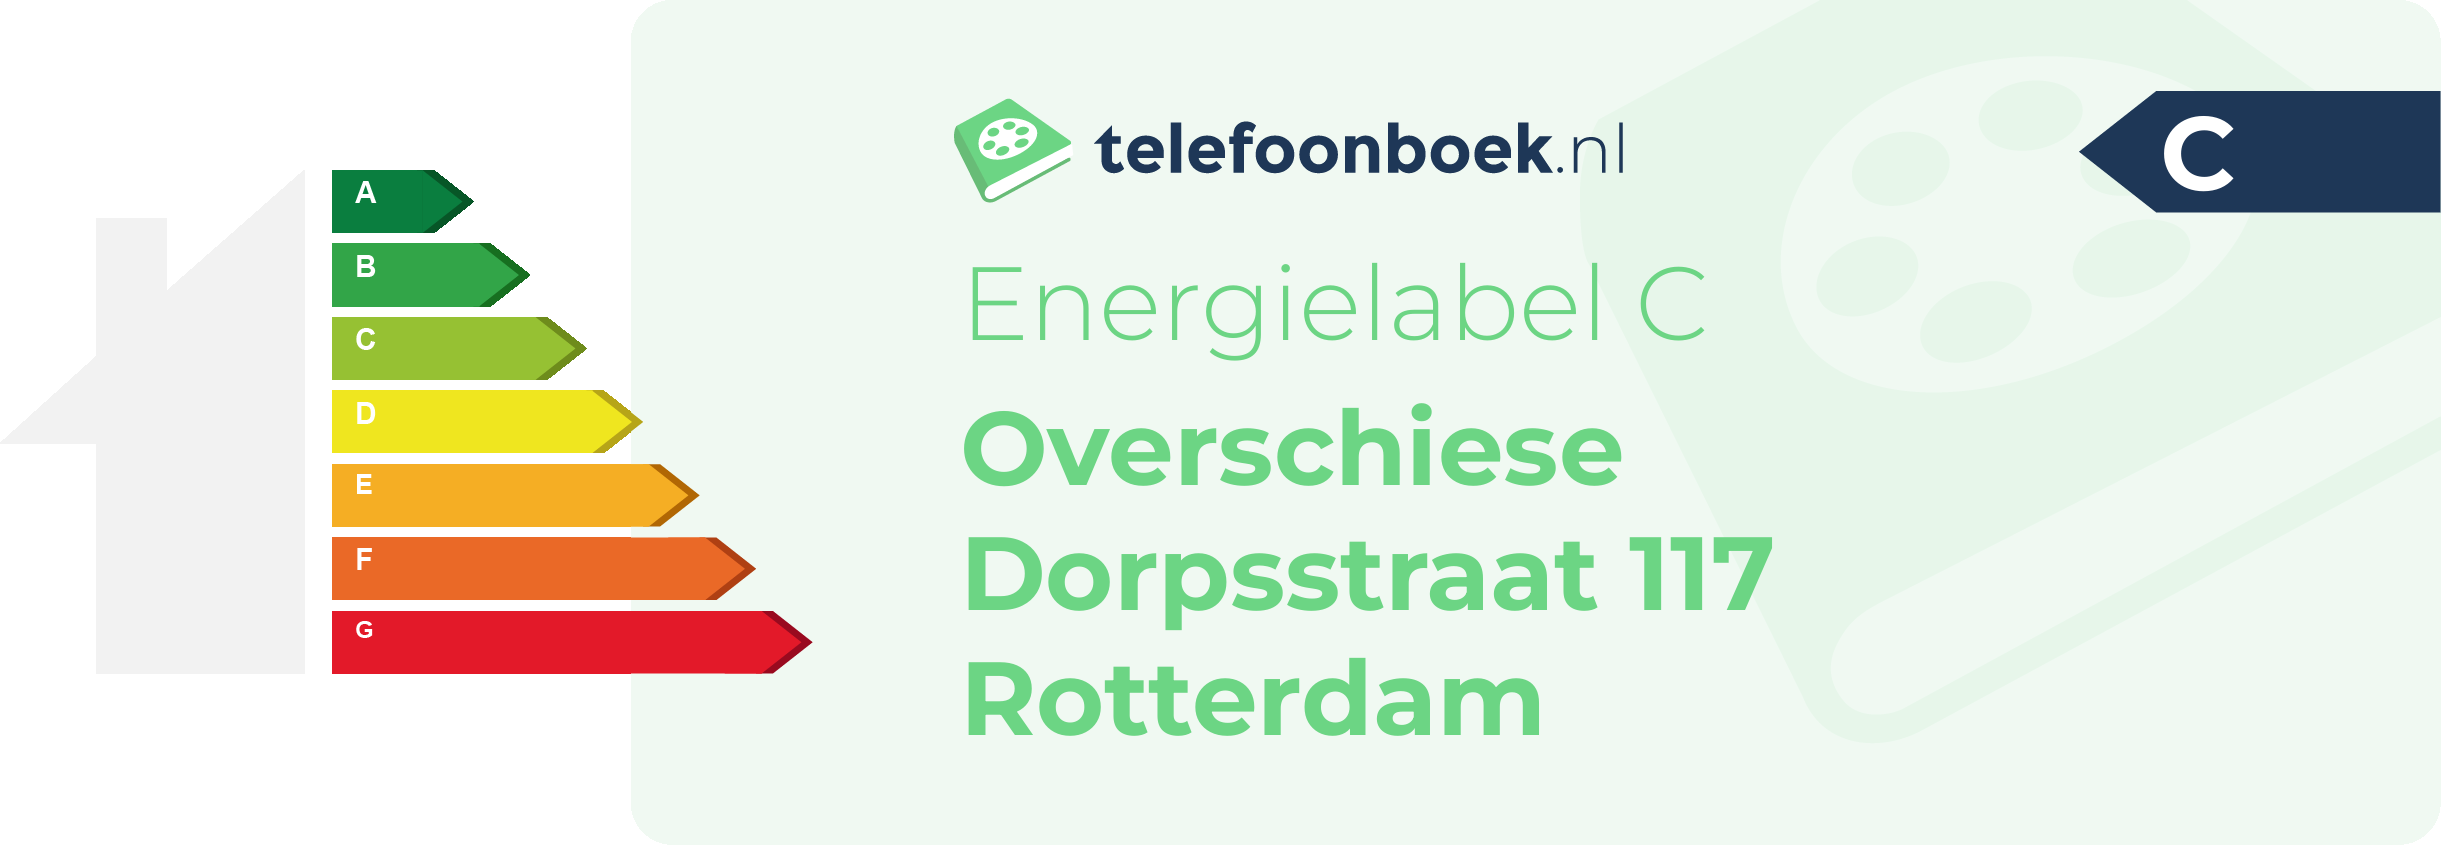 Energielabel Overschiese Dorpsstraat 117 Rotterdam